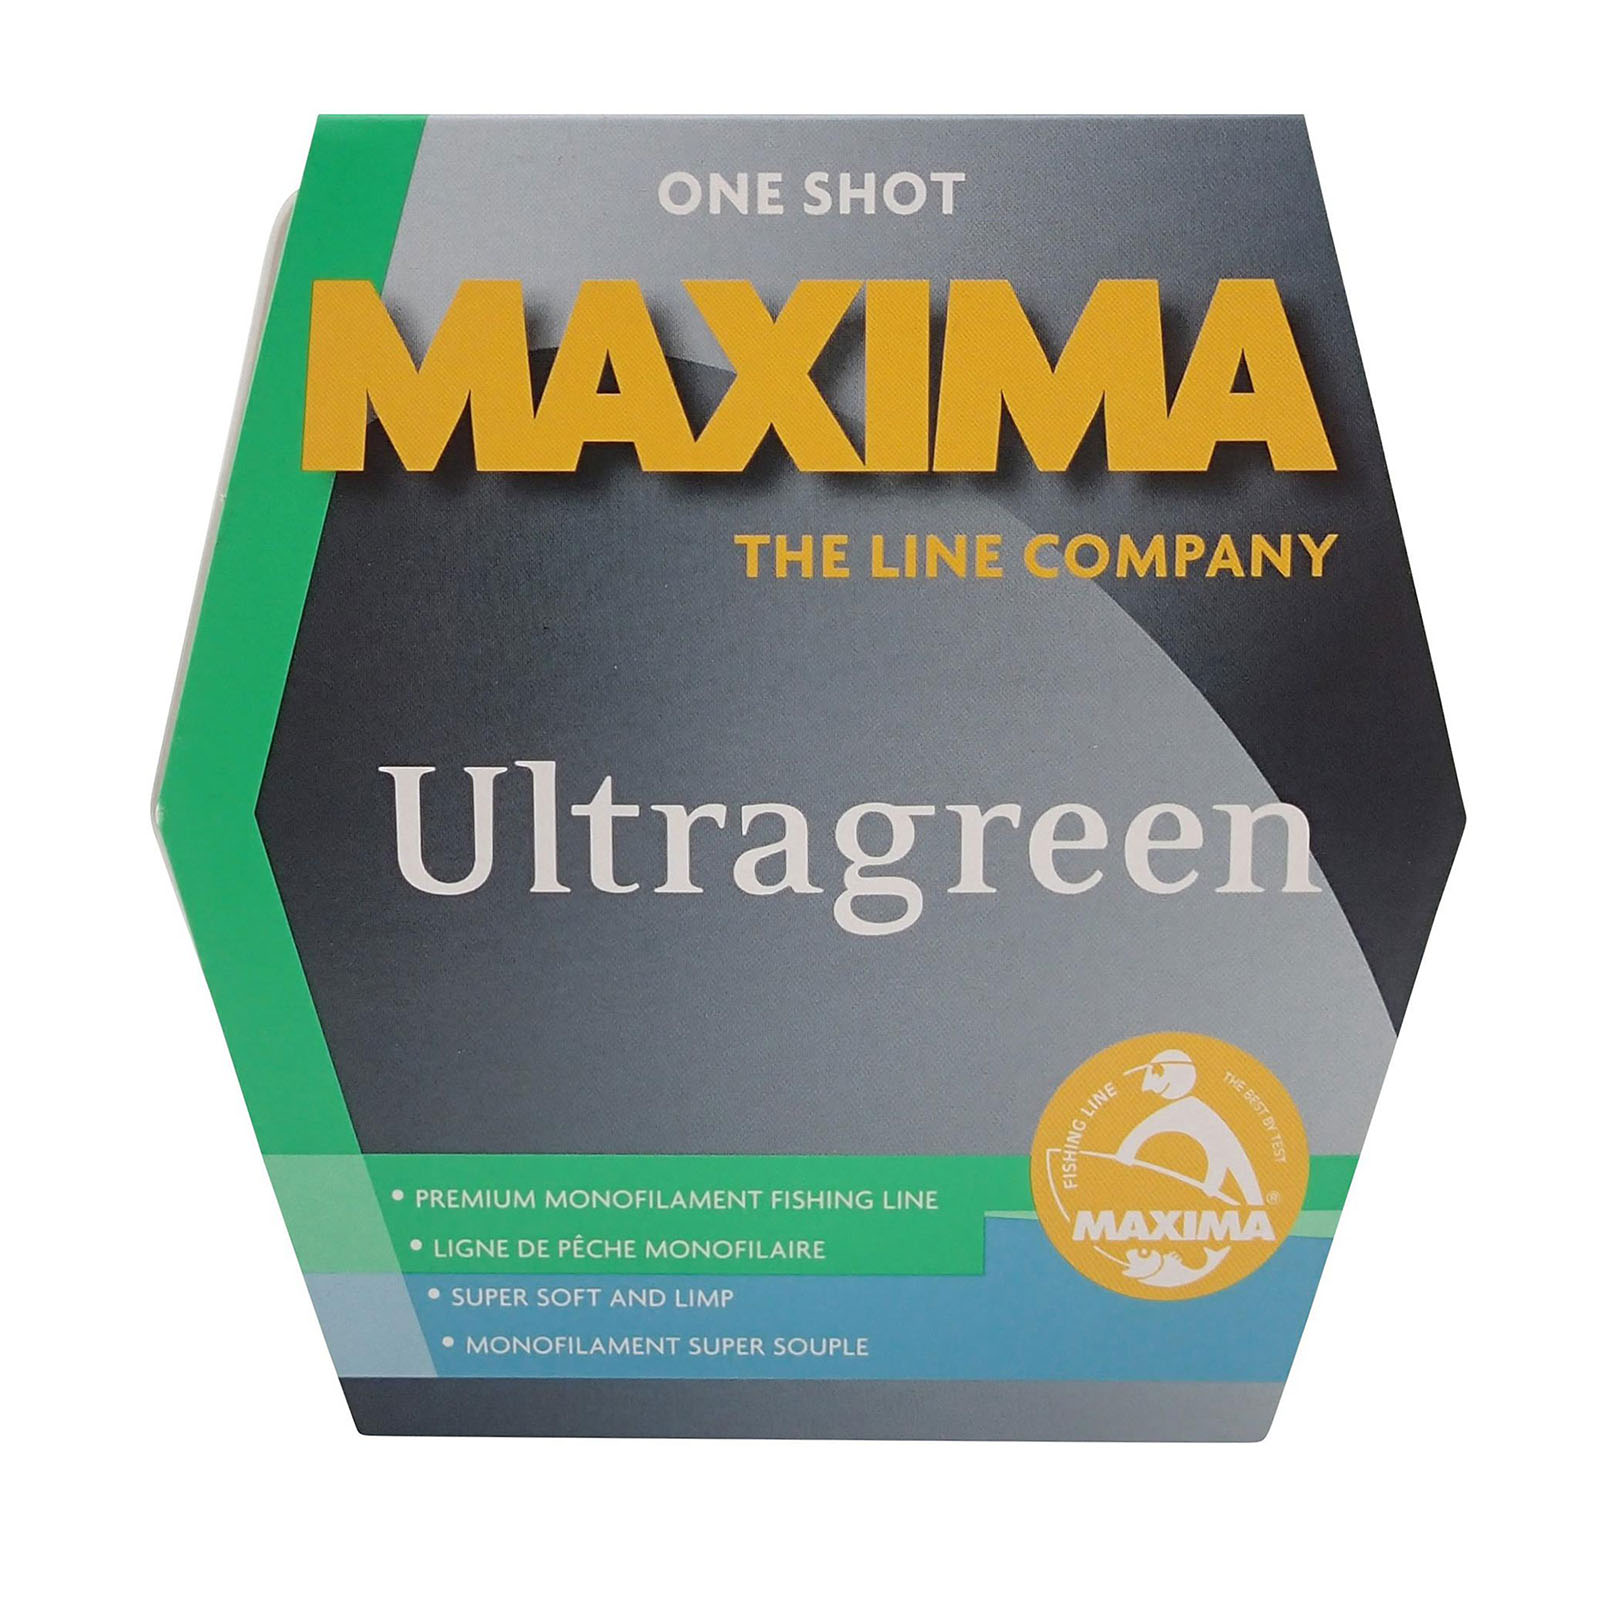 Maxima Ultragreen Monofilament Line